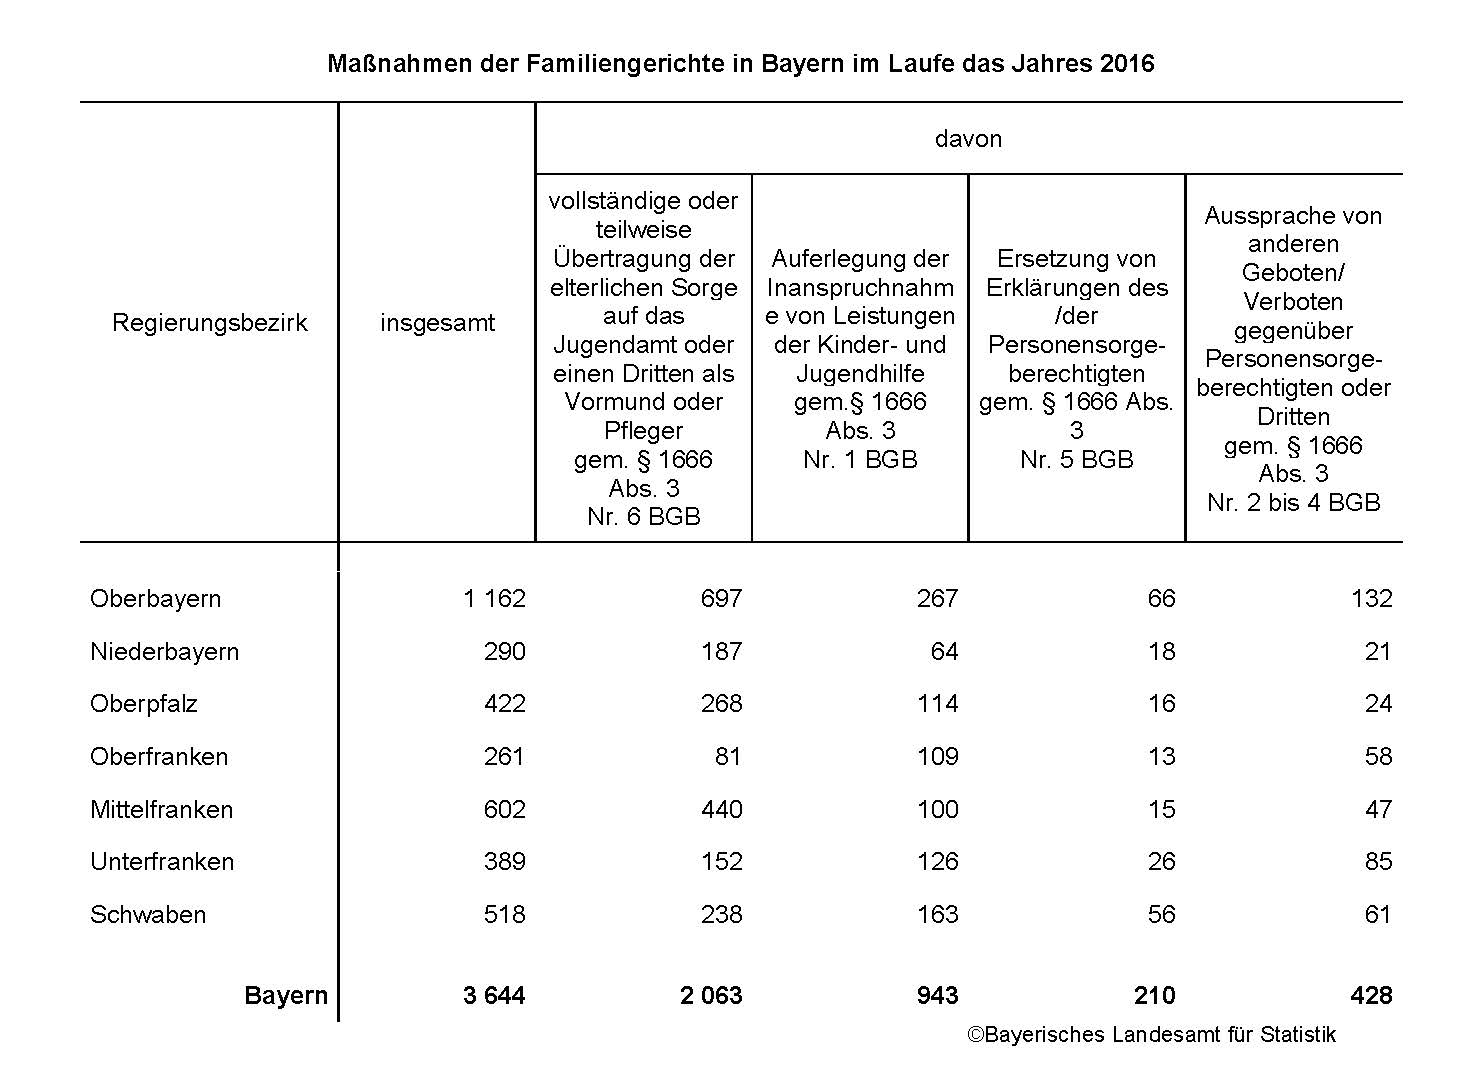 Maßnahmen der Familiengerichte in Bayern im Laufe des Jahres 2016